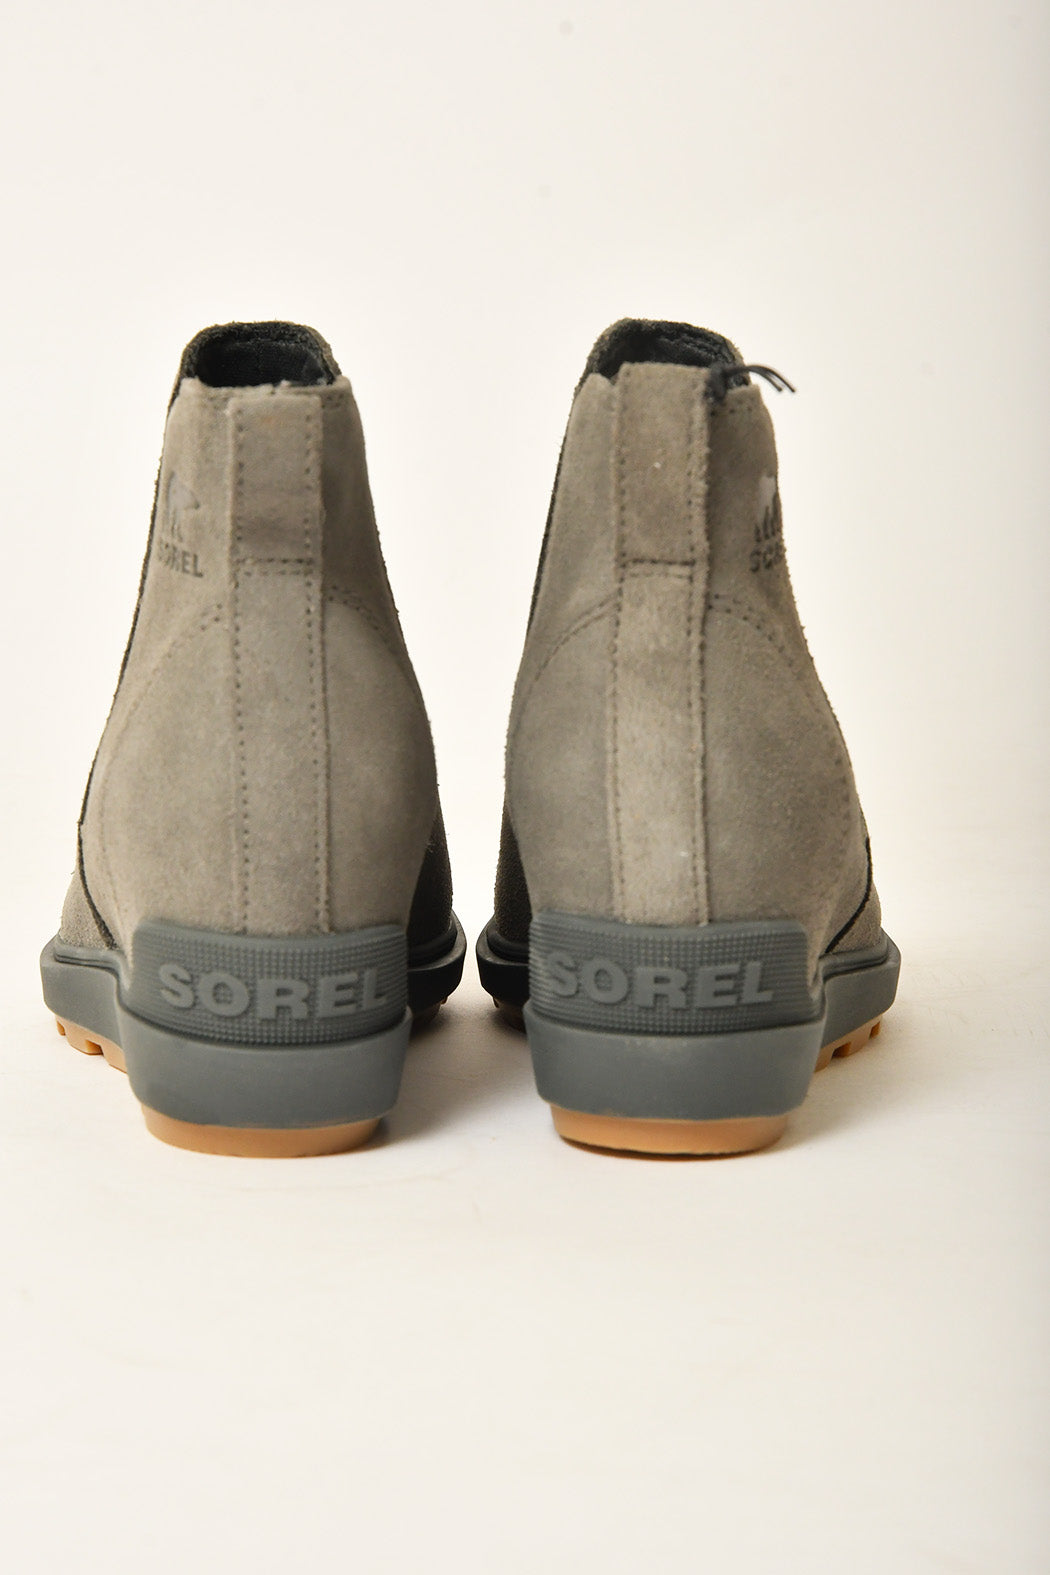 Sorel Evie II Chelsea Boot